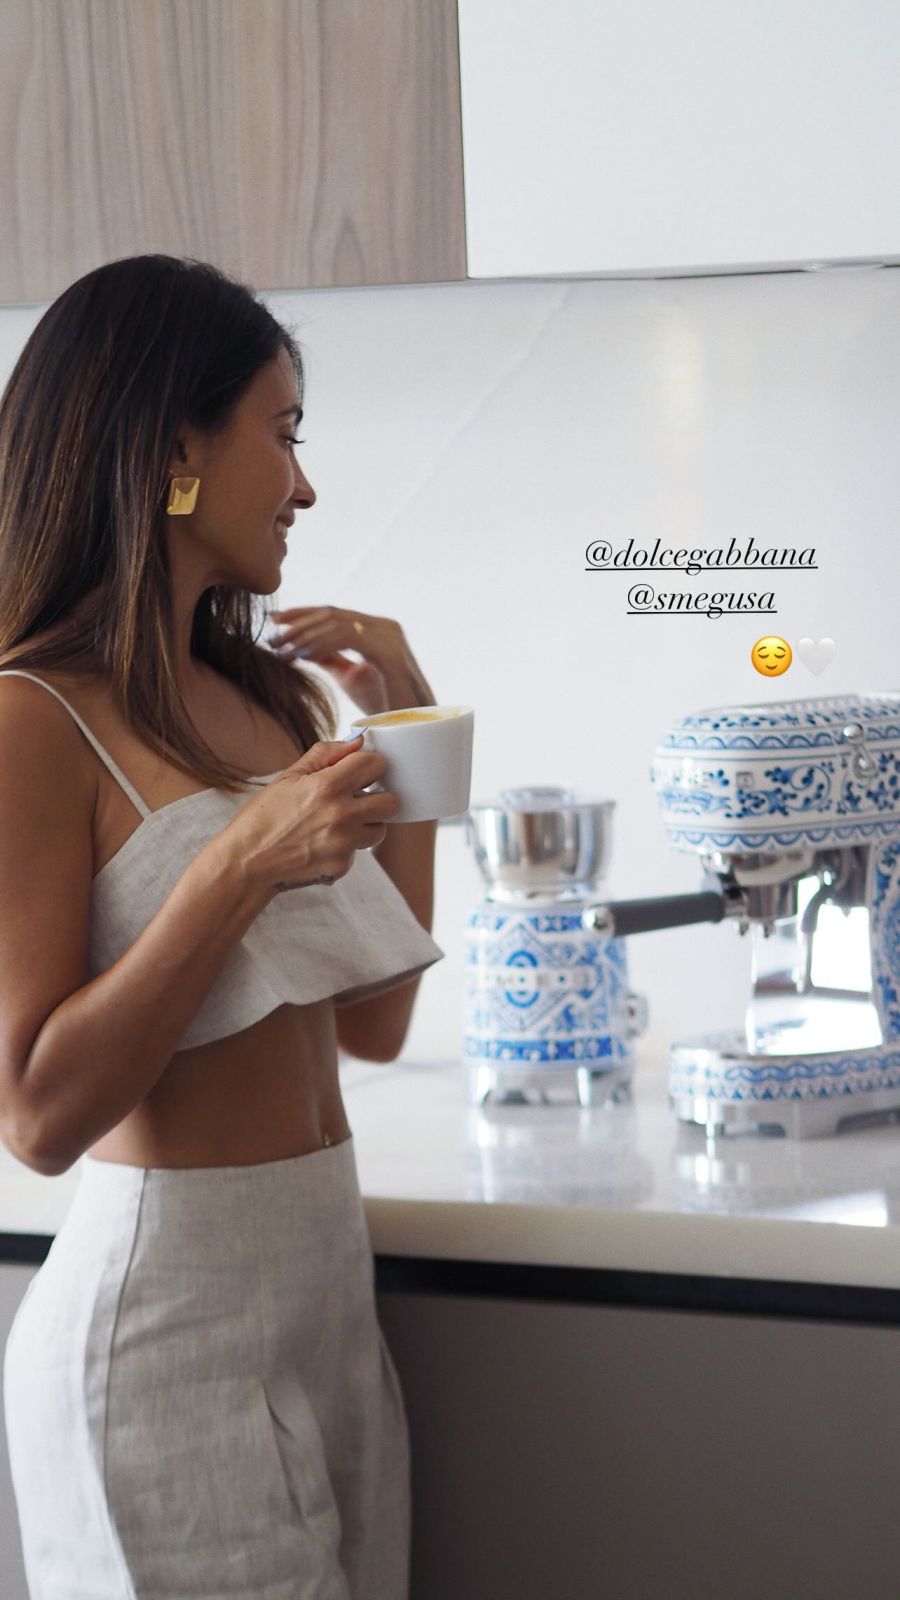 La que puede, puede: Antonela Roccuzzo mostró su lujosa cafetera de Dolce Gabbana